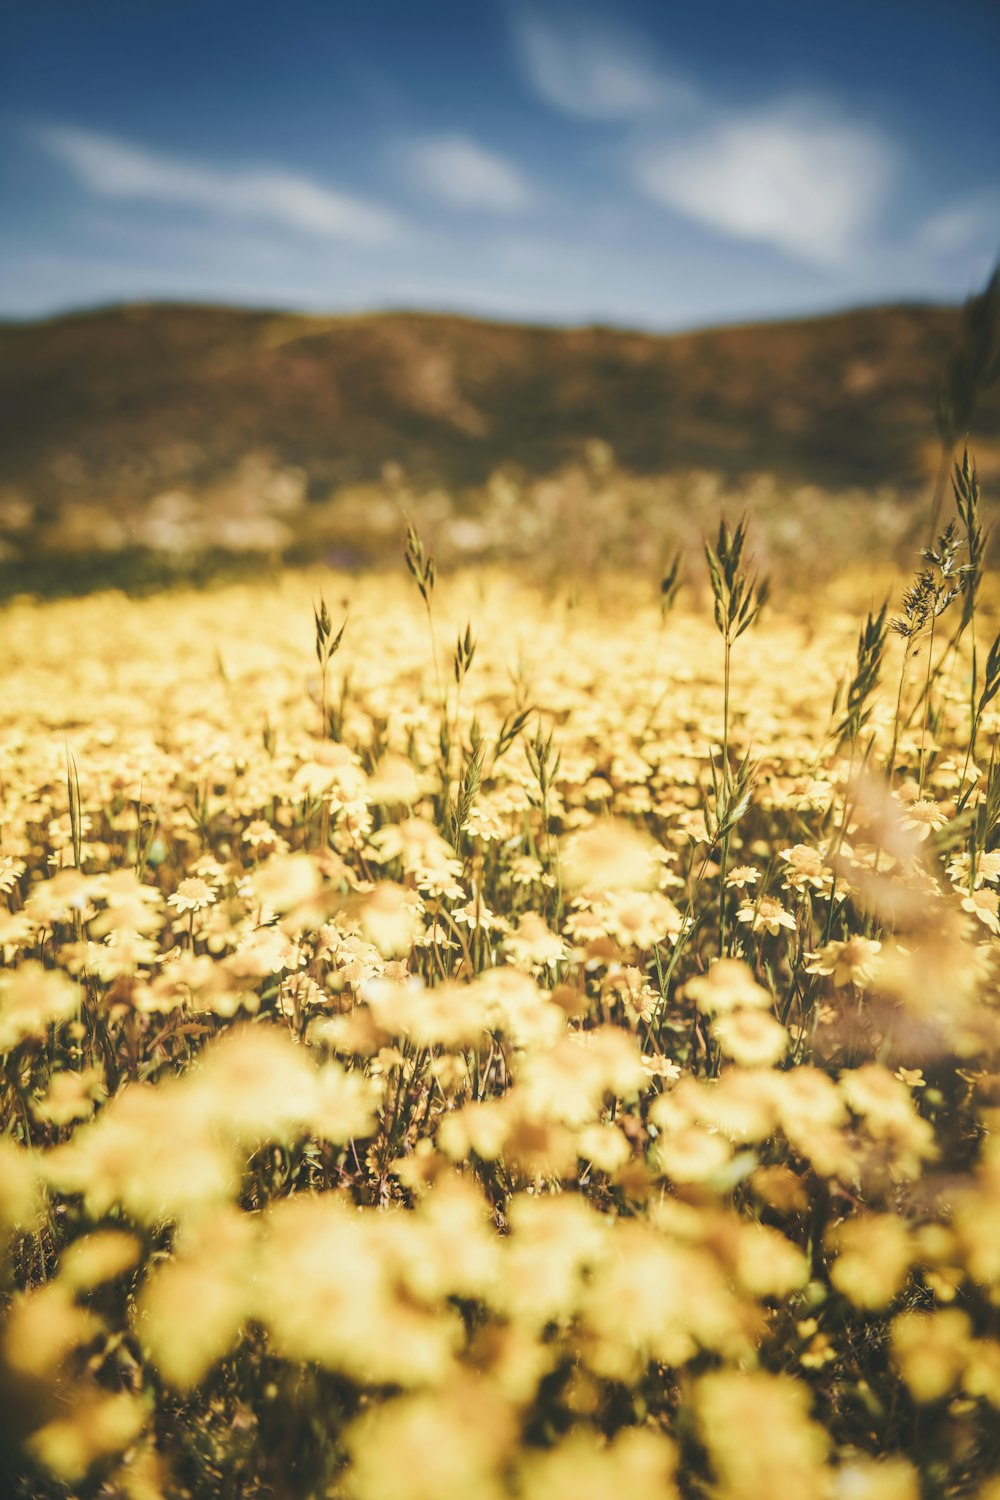 Un campo pieno di fiori gialli sotto un cielo blu